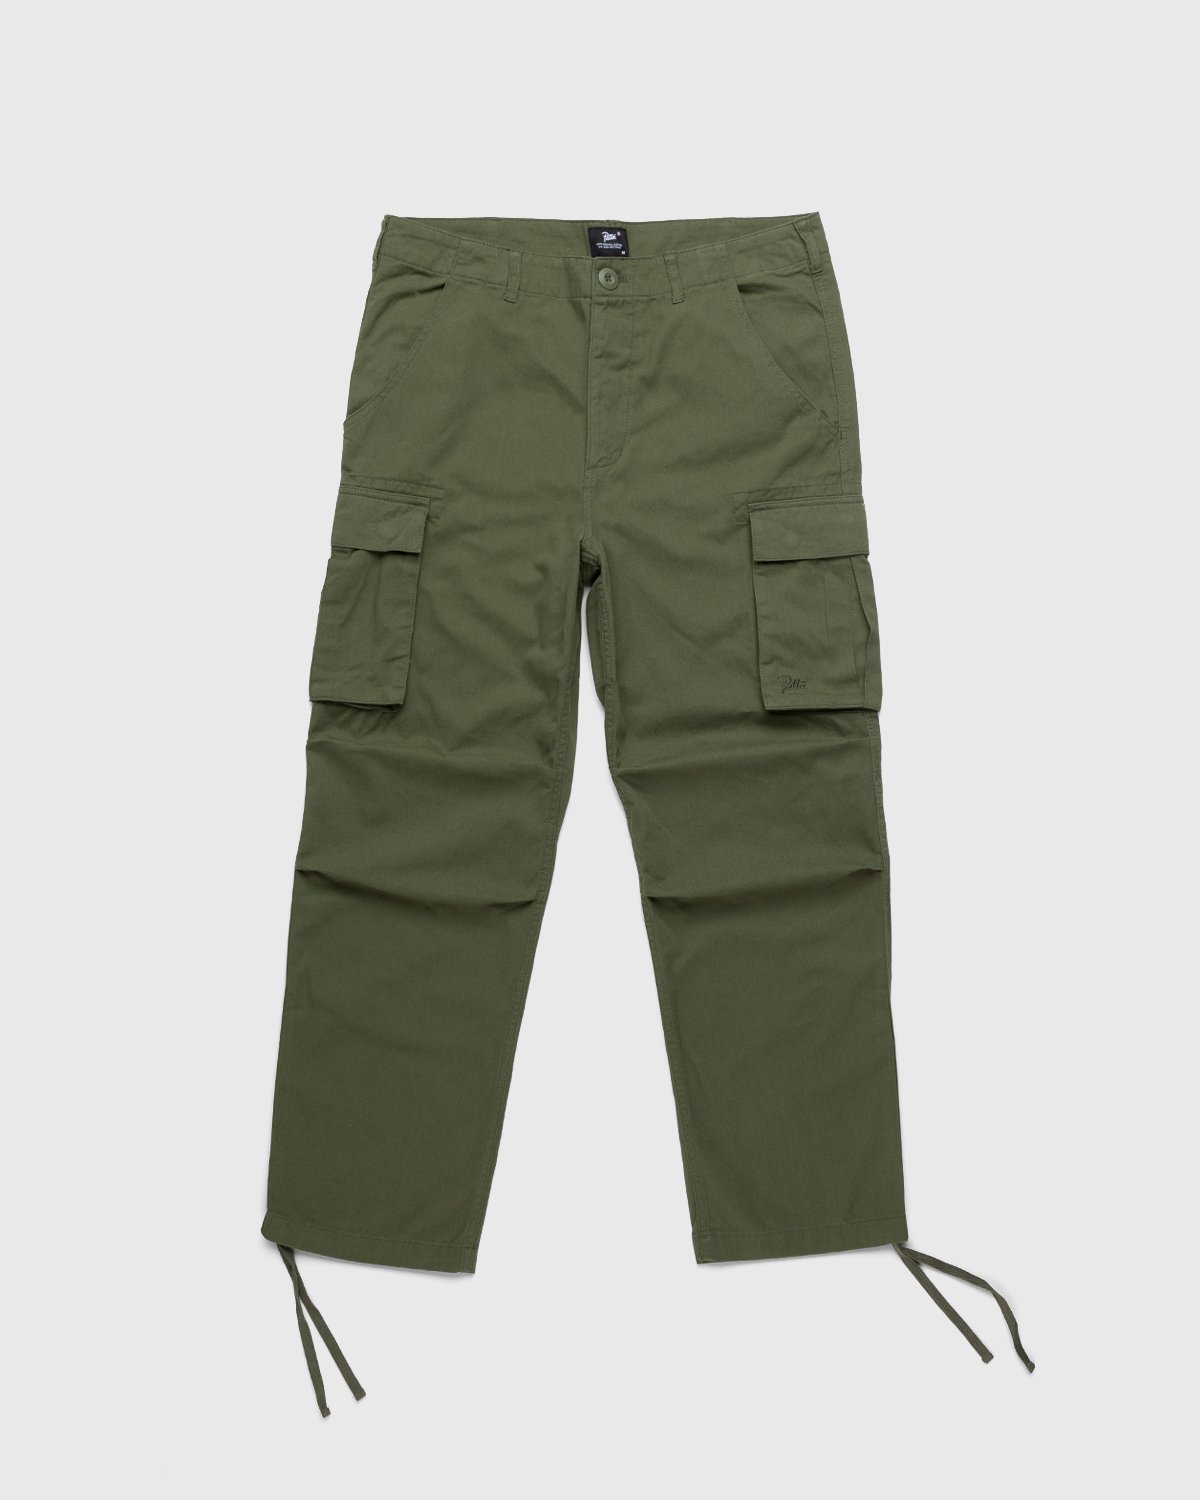 Patta - Basic Cargo Pants Olive - Clothing - Green - Image 1